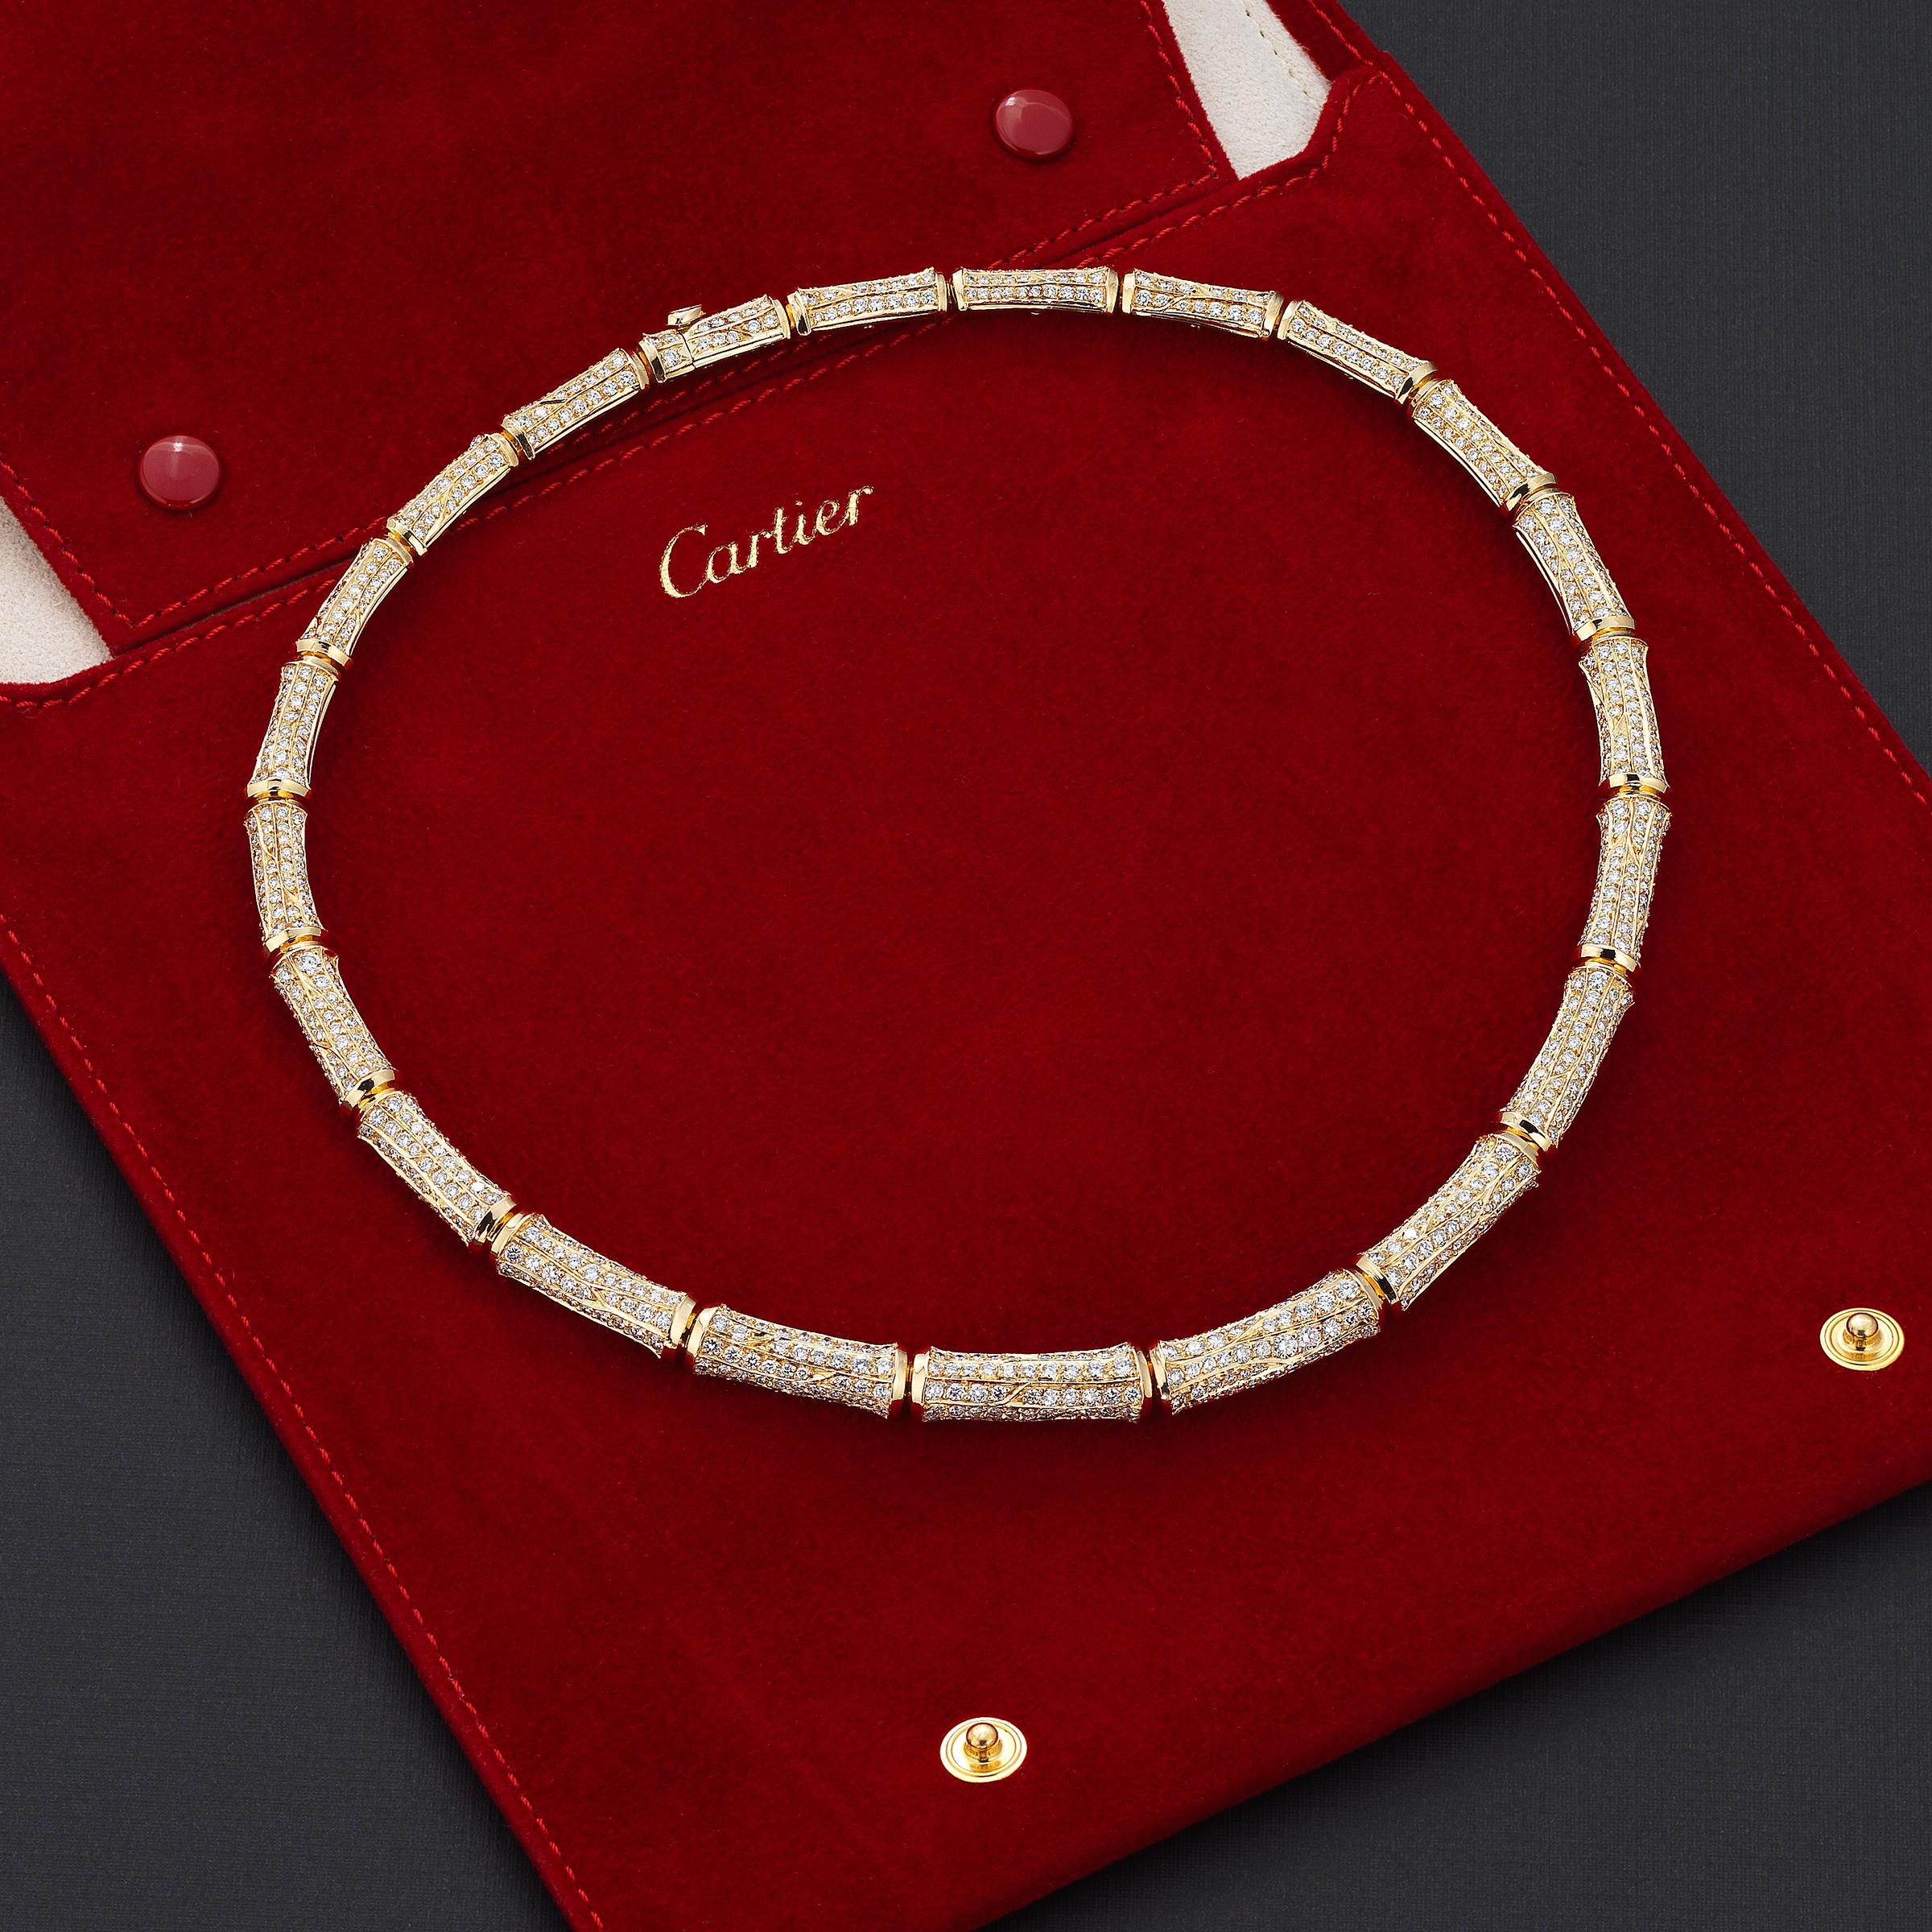 Éblouissant collier vintage Cartier Bamboo mettant en valeur environ 20 carats de diamants ronds fins et brillants, impeccablement sertis dans de l'or jaune 18 carats lustré. Le collier repose sans effort et confortablement sur le collier, ce qui